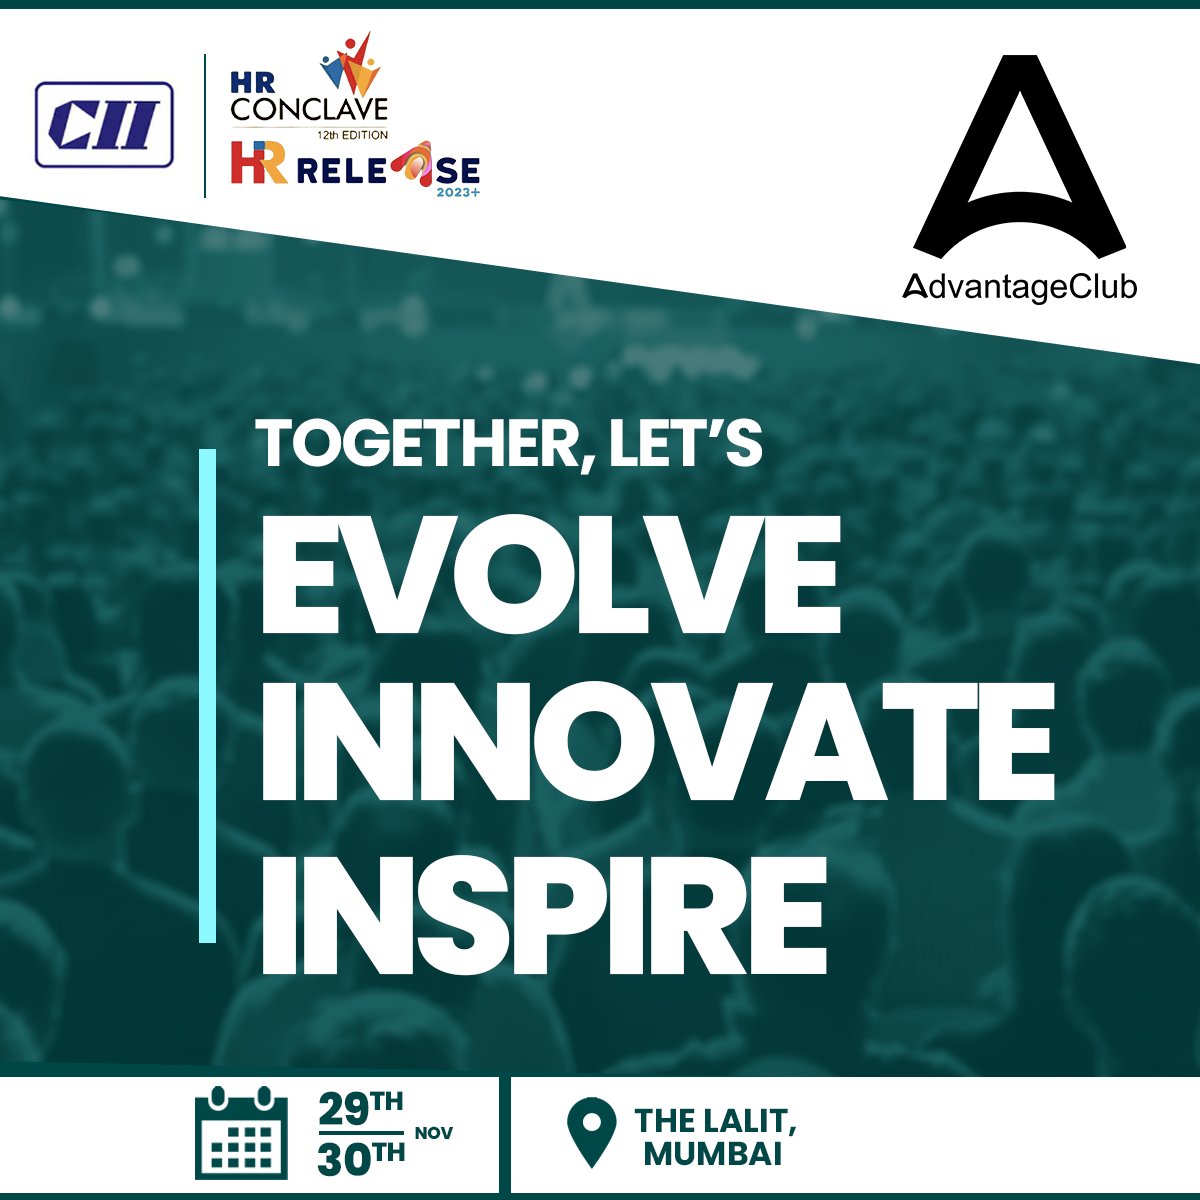 Advantage Club proudly announces that we are the HR-Tech Partner of HR Release - 12th CII HR Conclave 2022.

Let's talk about the #FutureOfWork!

Registration link: hubs.li/Q01t6_9r0

@FollowCII

#CIIHRConclave22 #HRConclave #CII #AdvantageClub